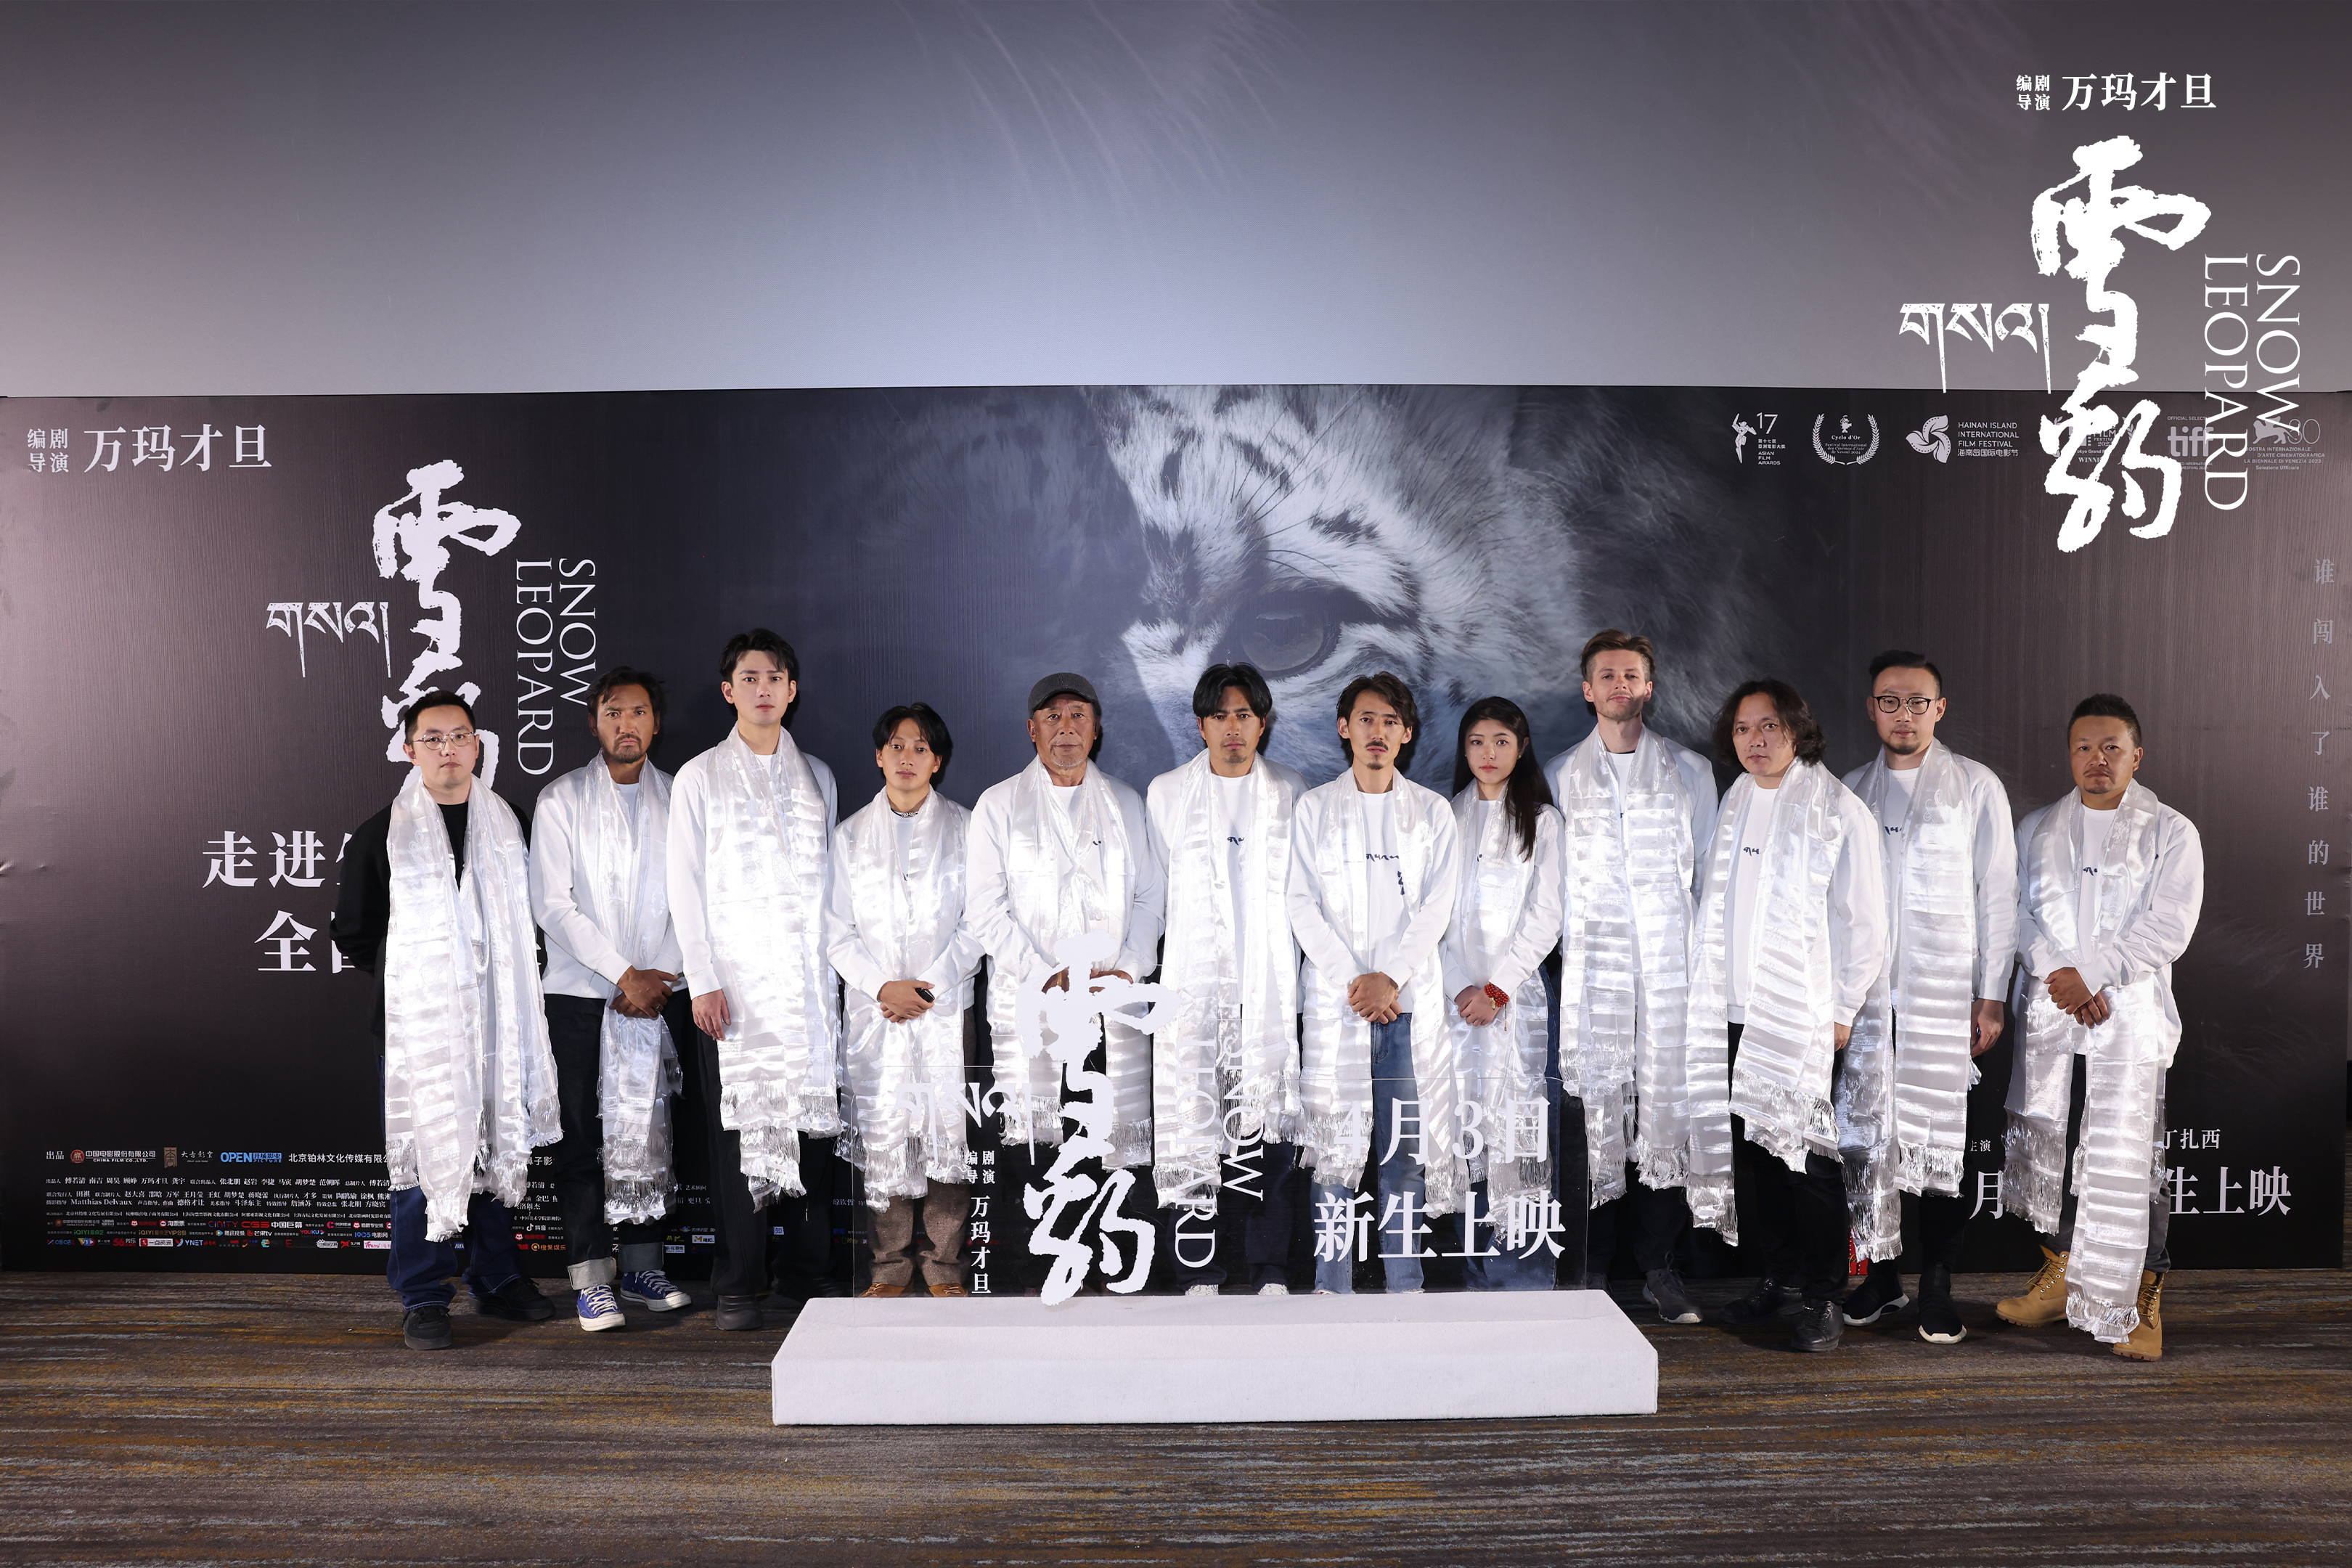 中影股份领衔出品、发行影片《雪豹》首映礼在京举办